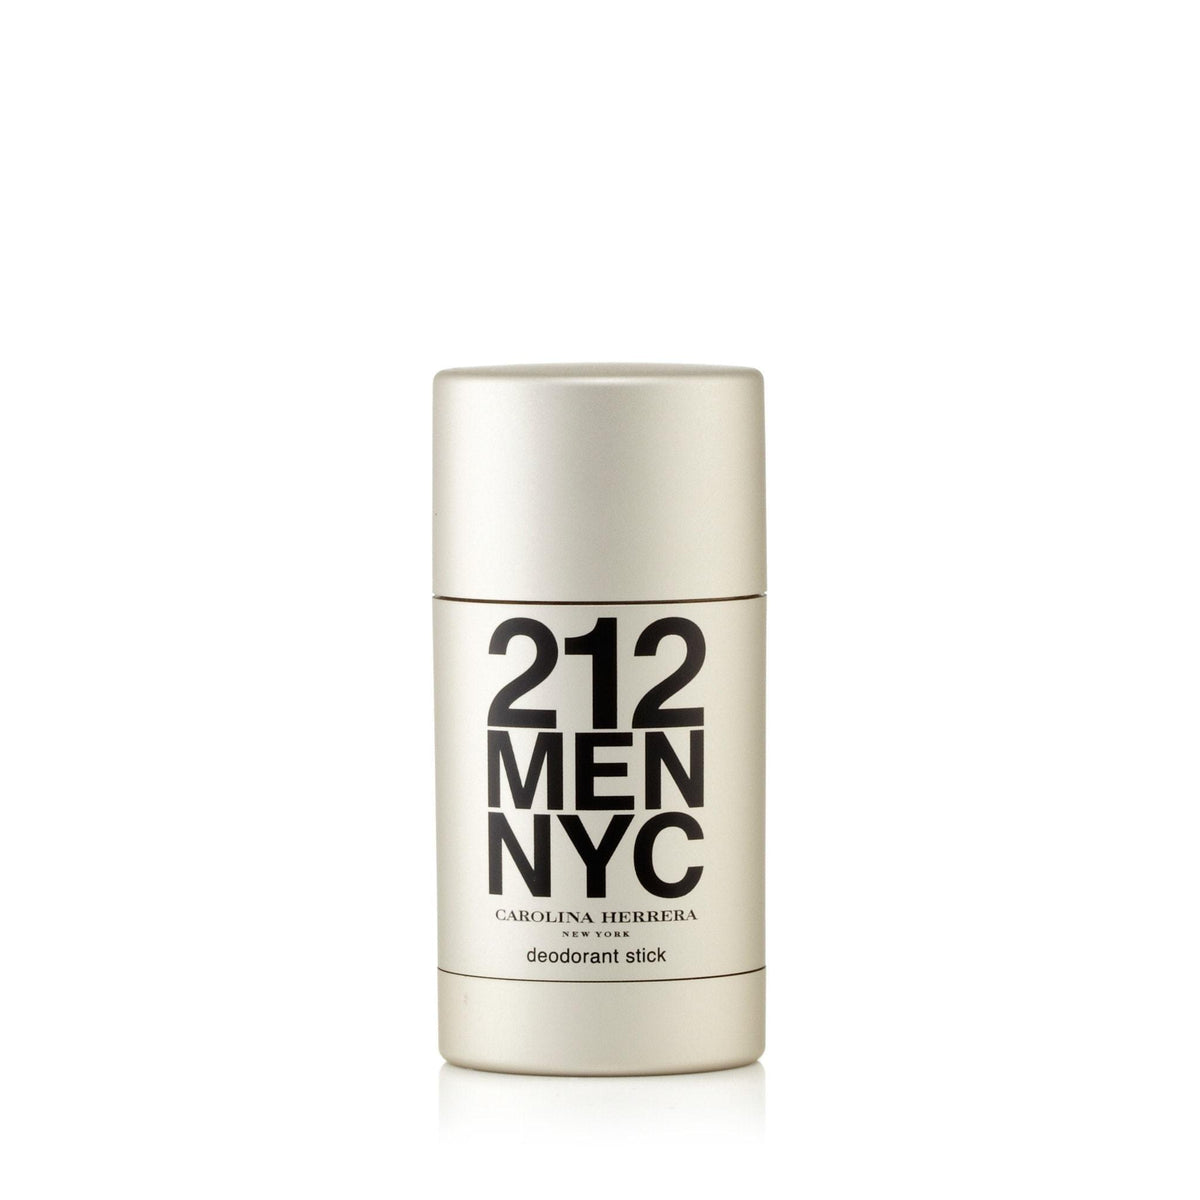 Carolina Herrera 212 Men Deodorant for Men 2.1 oz.